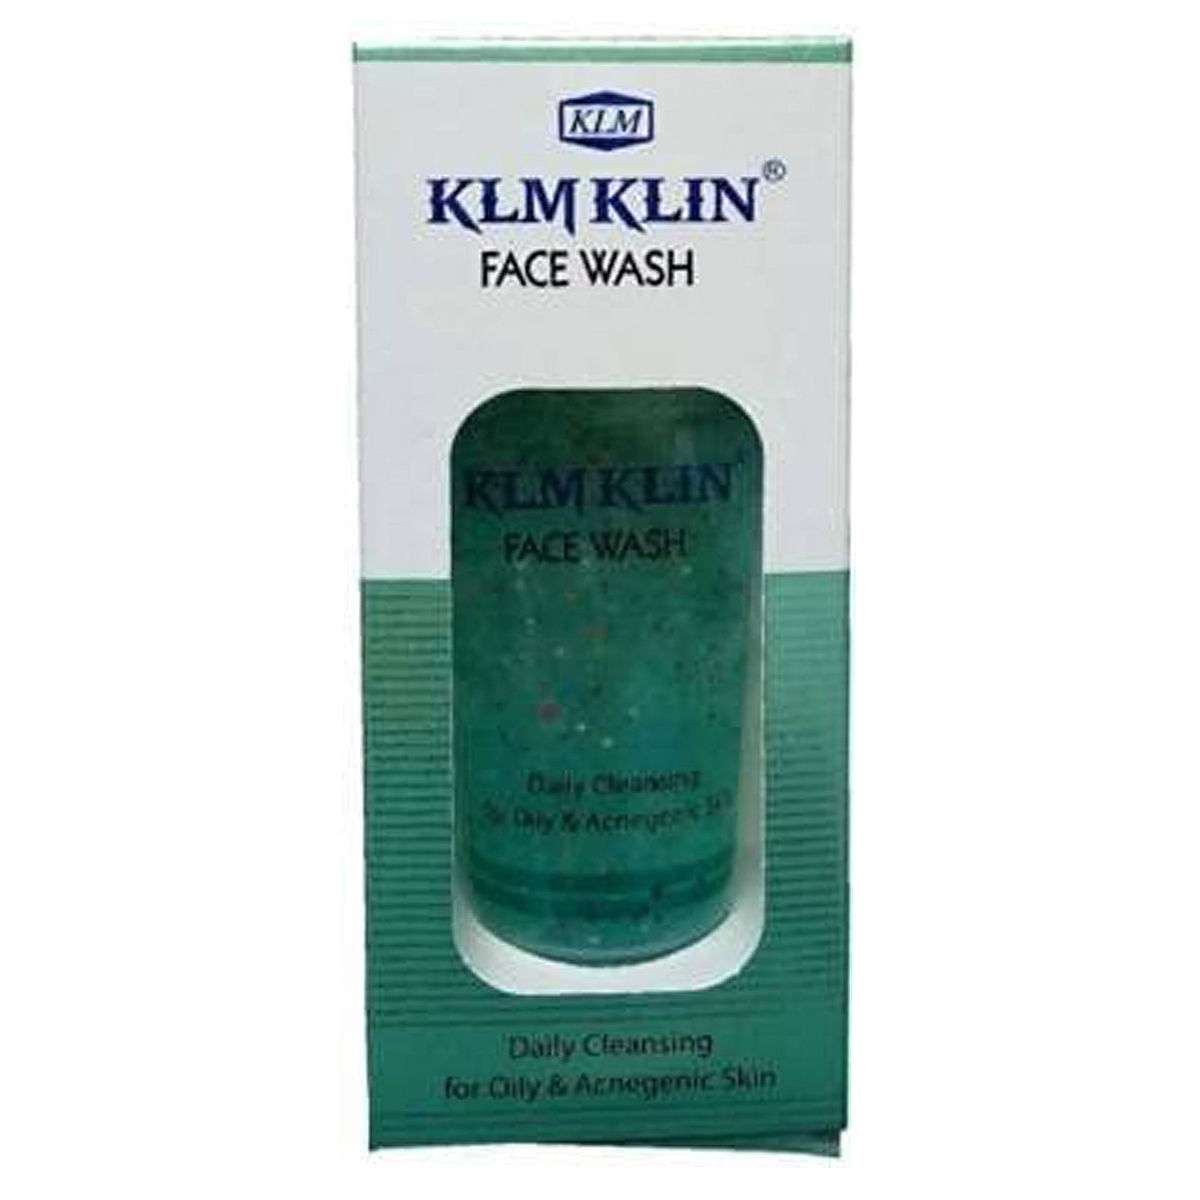 Buy Klm Klin Face Wash, 100 gm Online